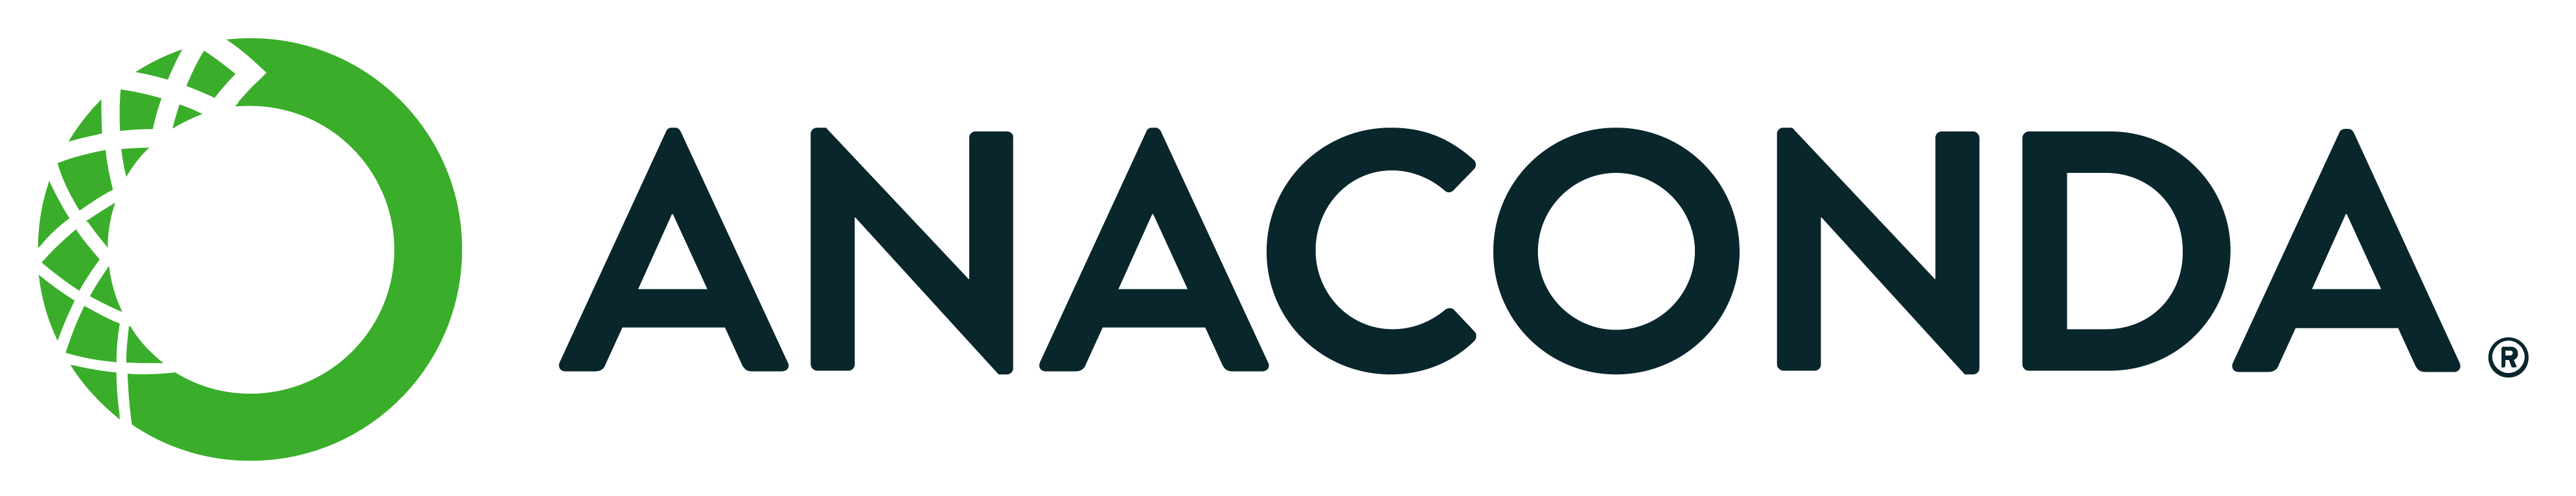 Anaconda Logo wide